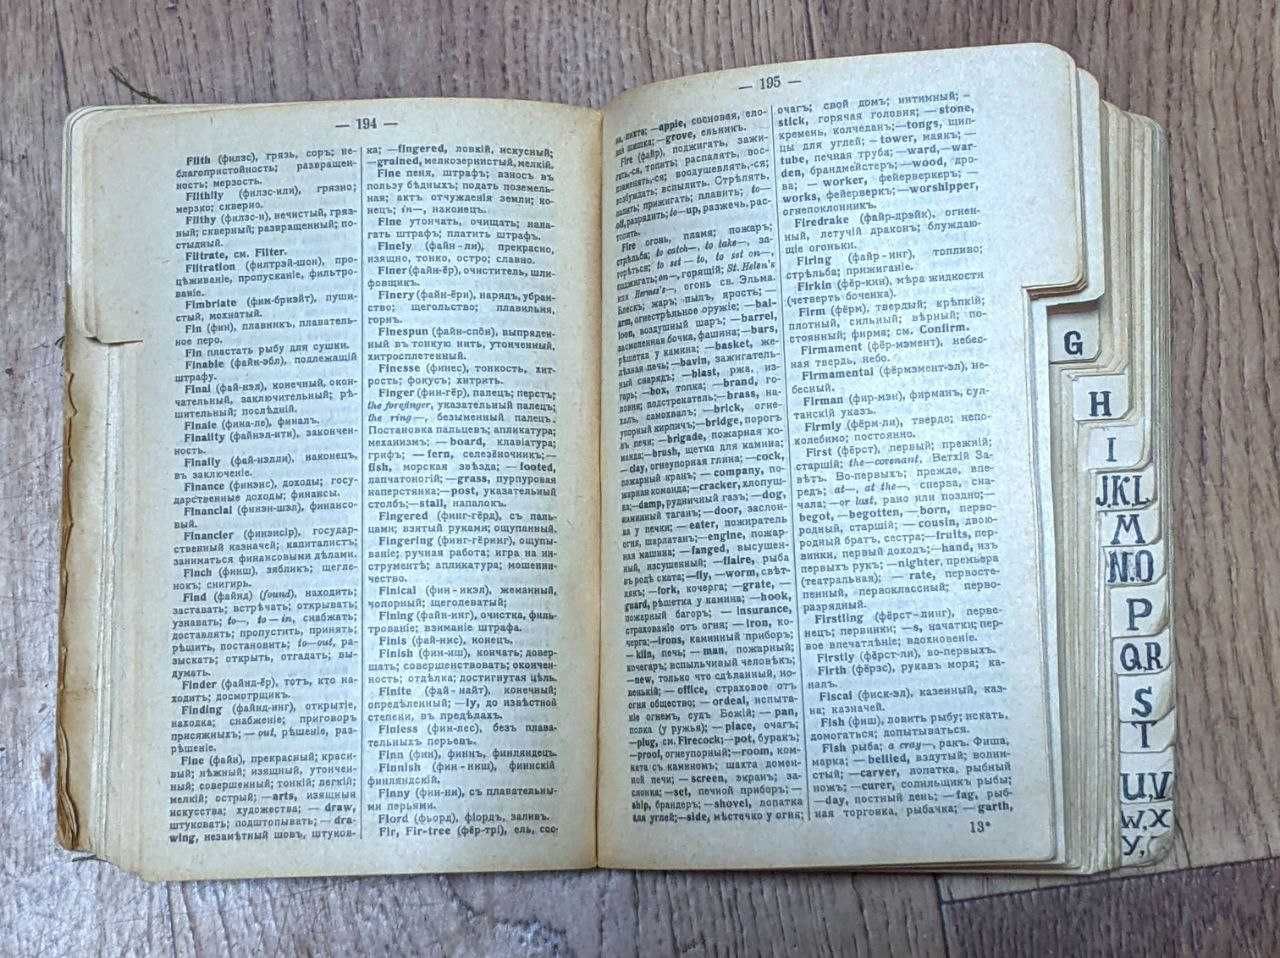 Англо-русский словарь,1915 г.